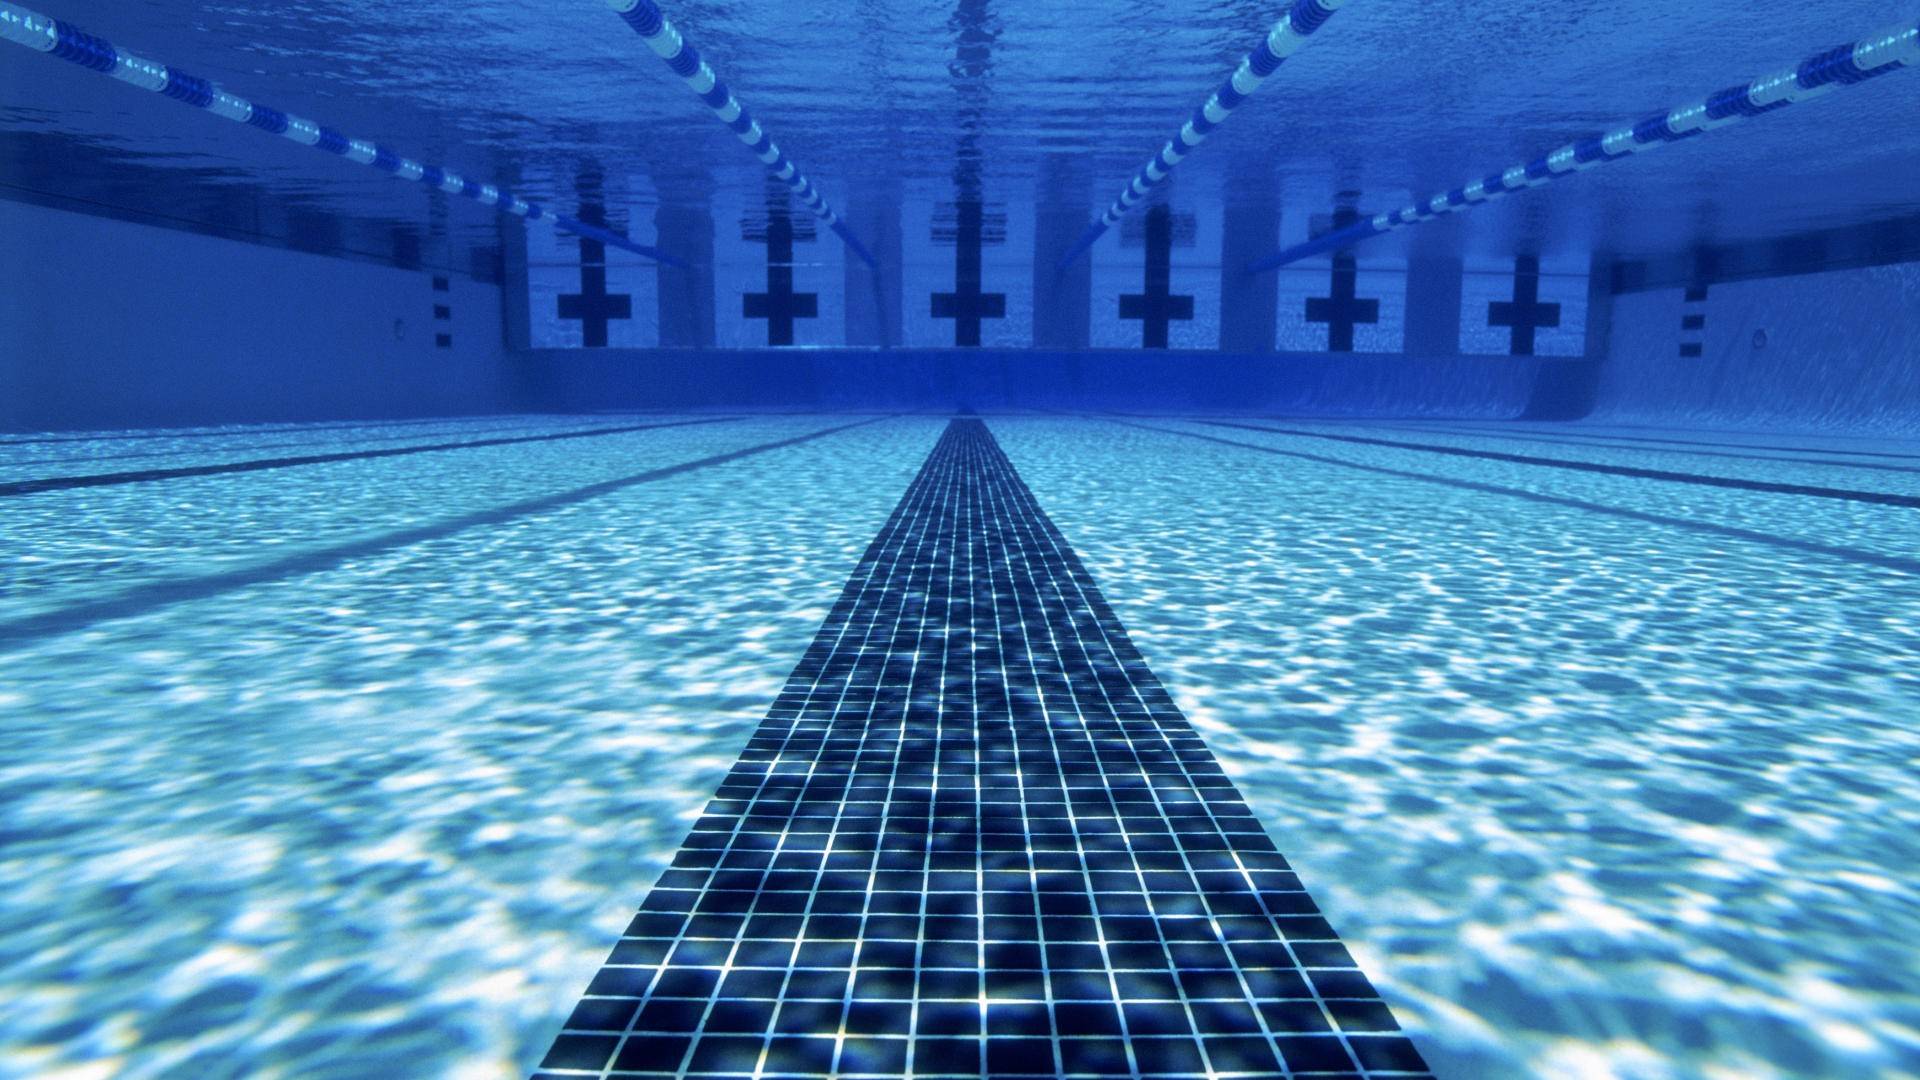 47 Olympic Swimming Pool Wallpaper  WallpaperSafari